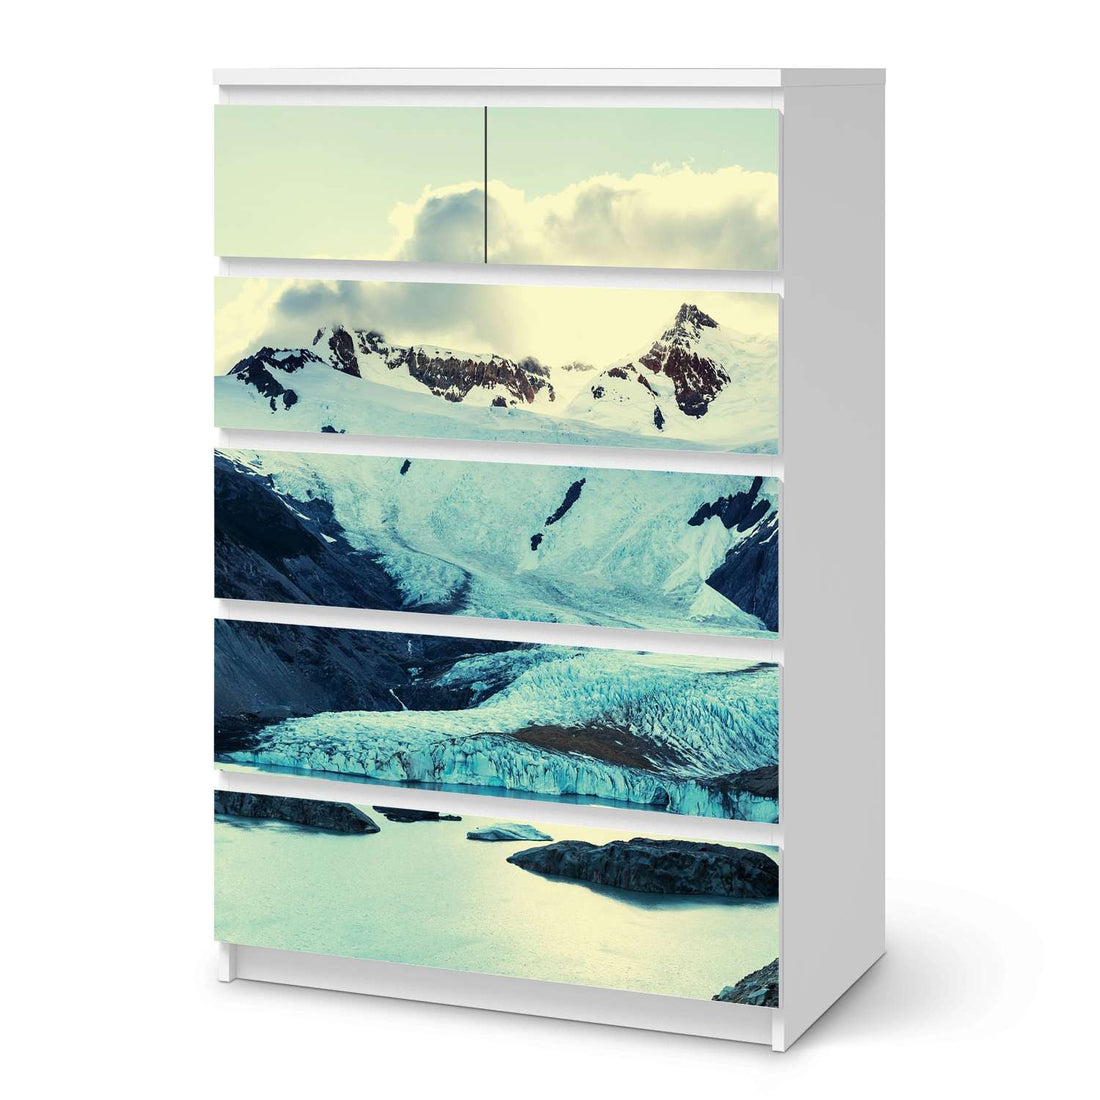 Möbel Klebefolie Patagonia - IKEA Malm Kommode 6 Schubladen (hoch)  - weiss